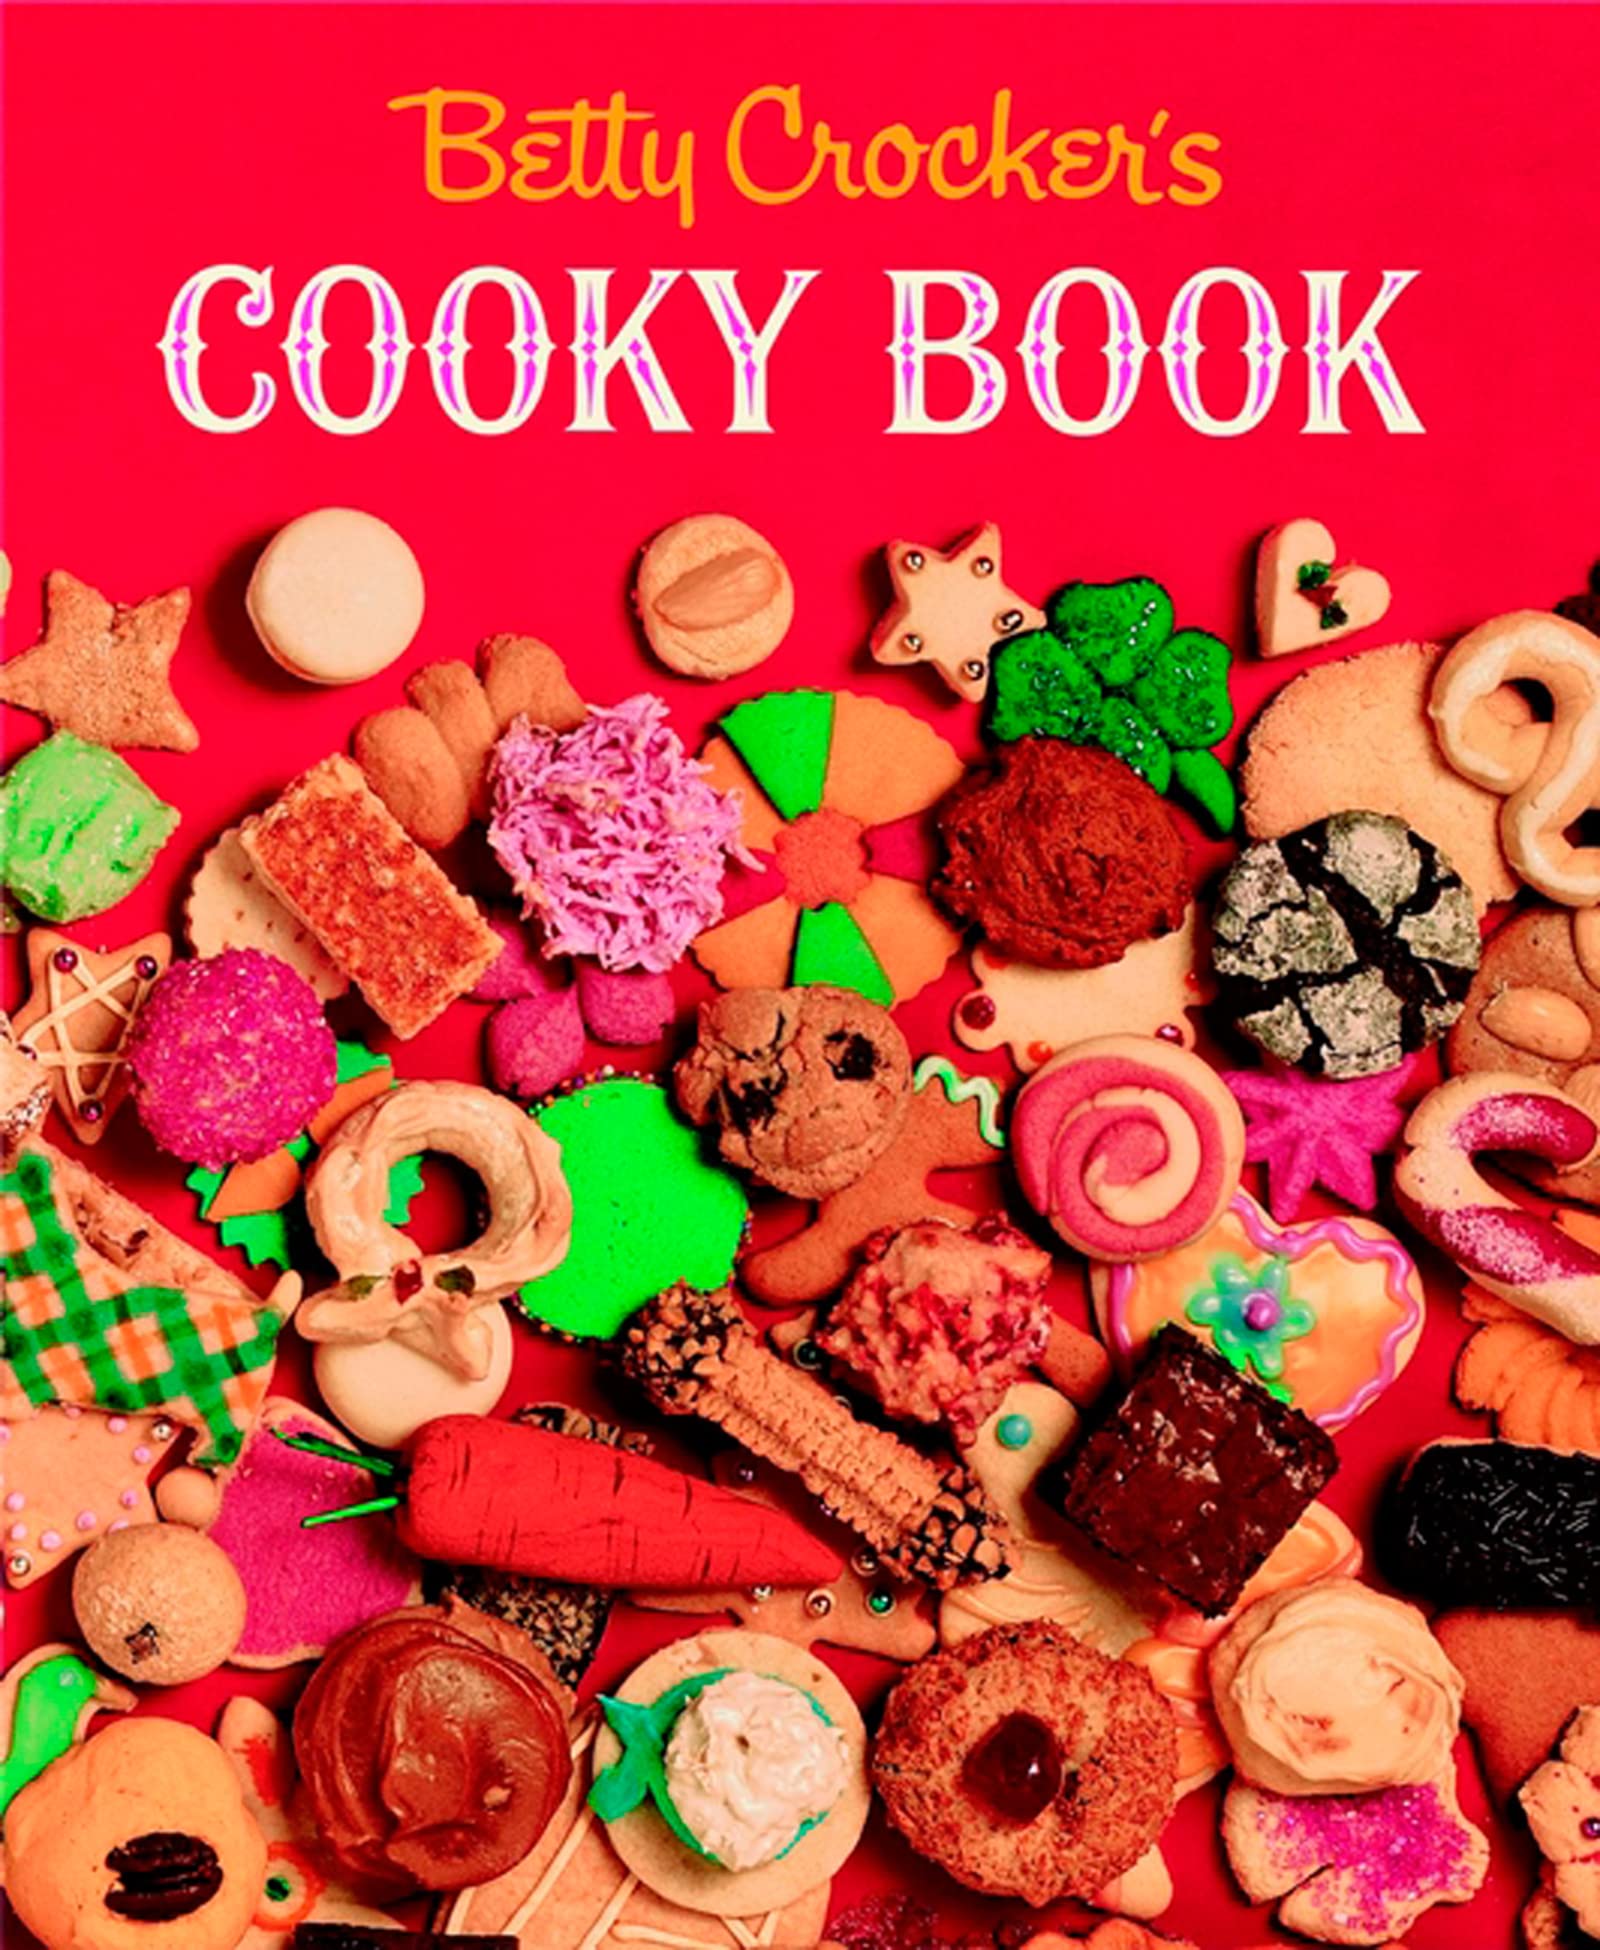 Betty Crocker's Cooky Book by Betty Crocker